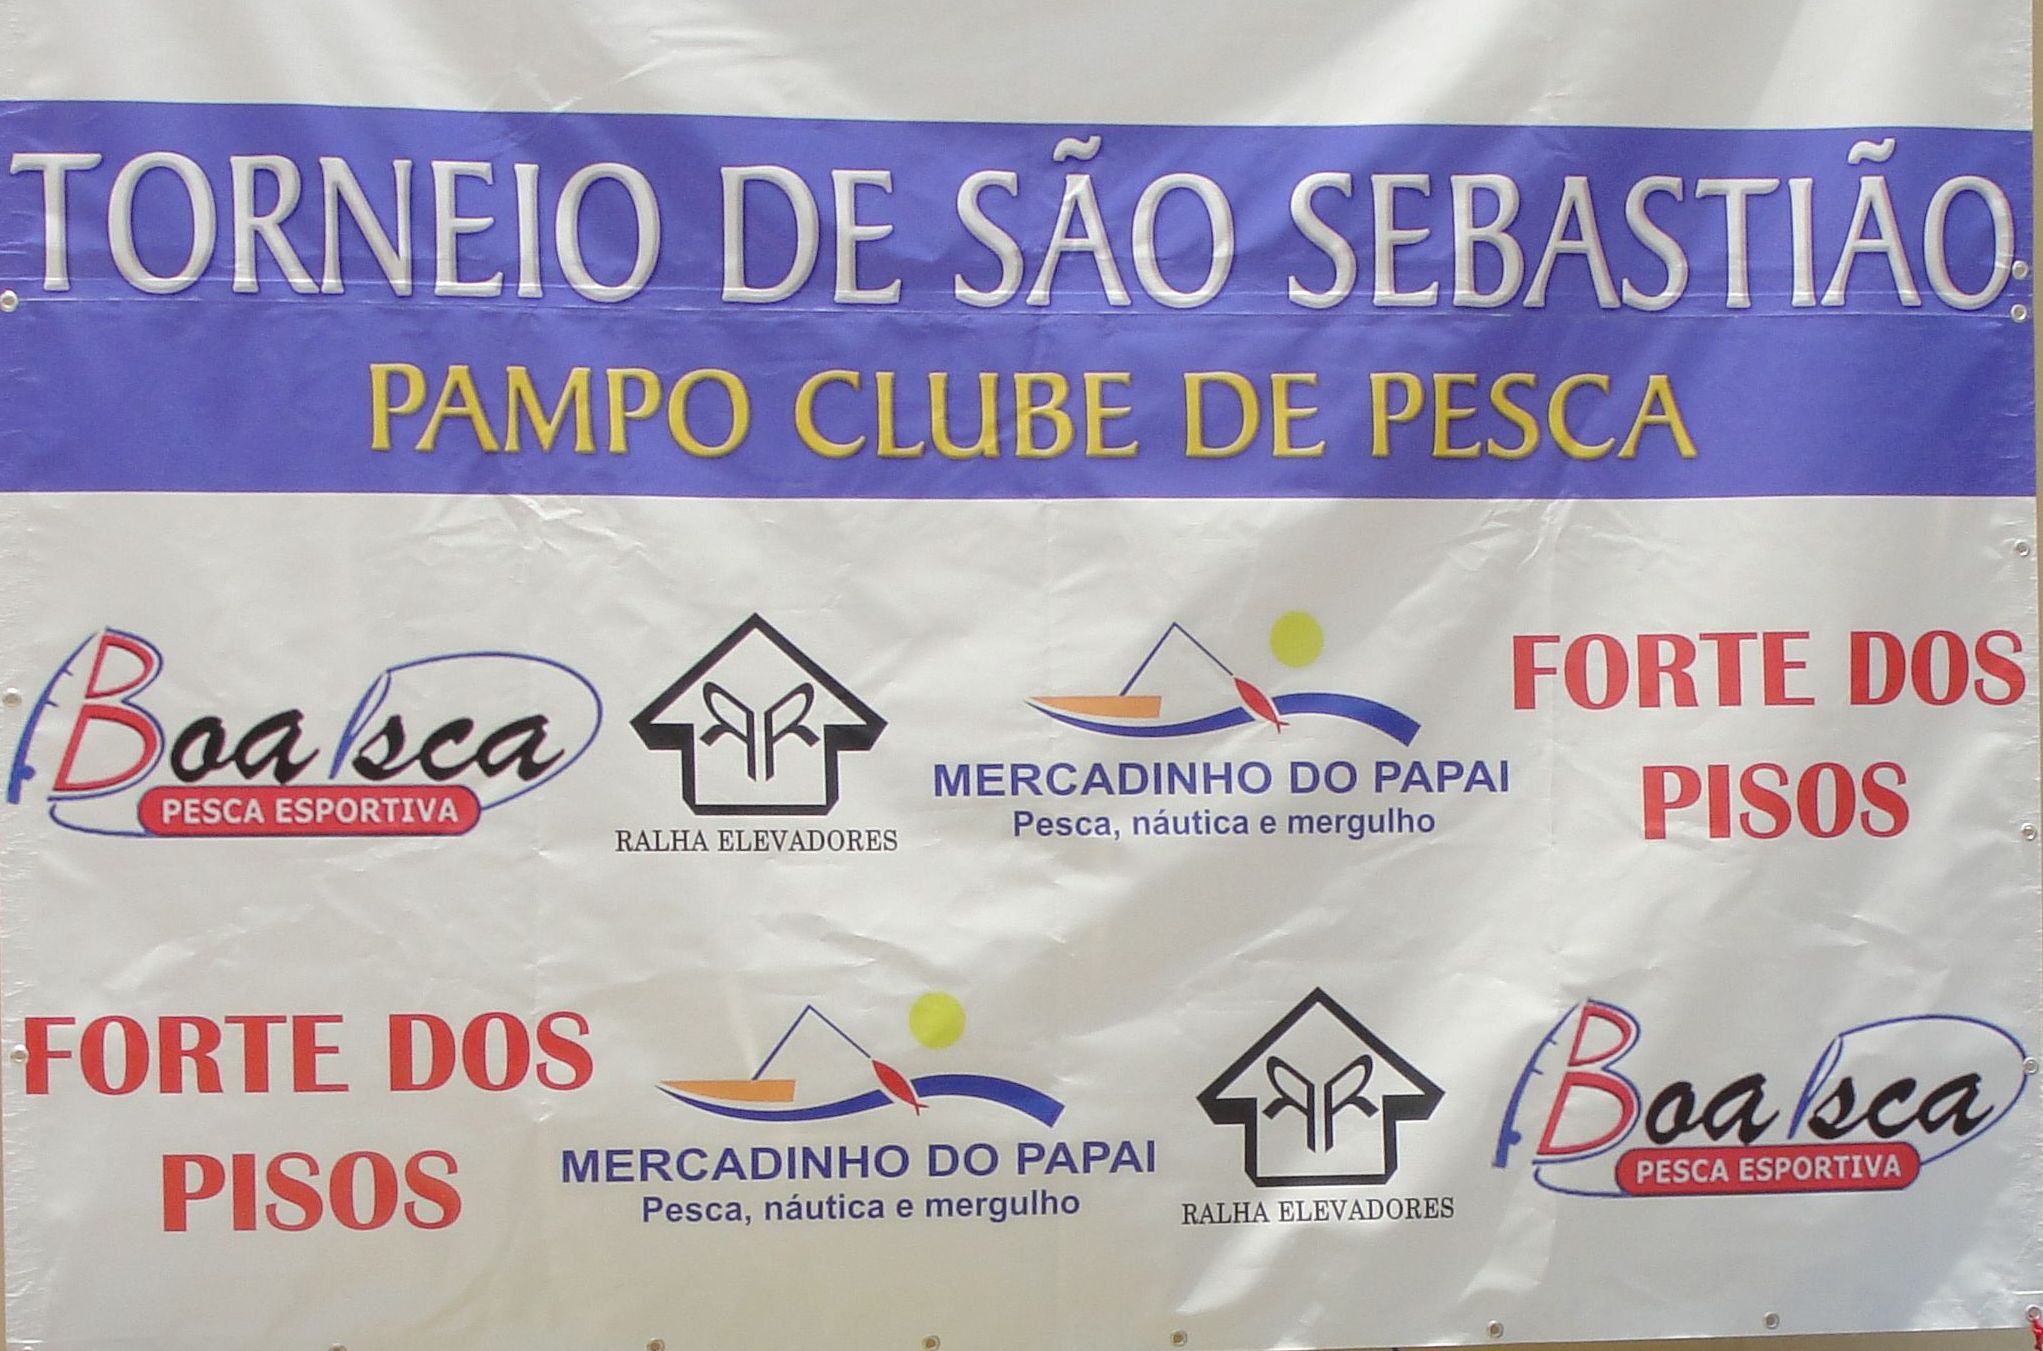 Torneio de São Sebastião 2010 – Premiação